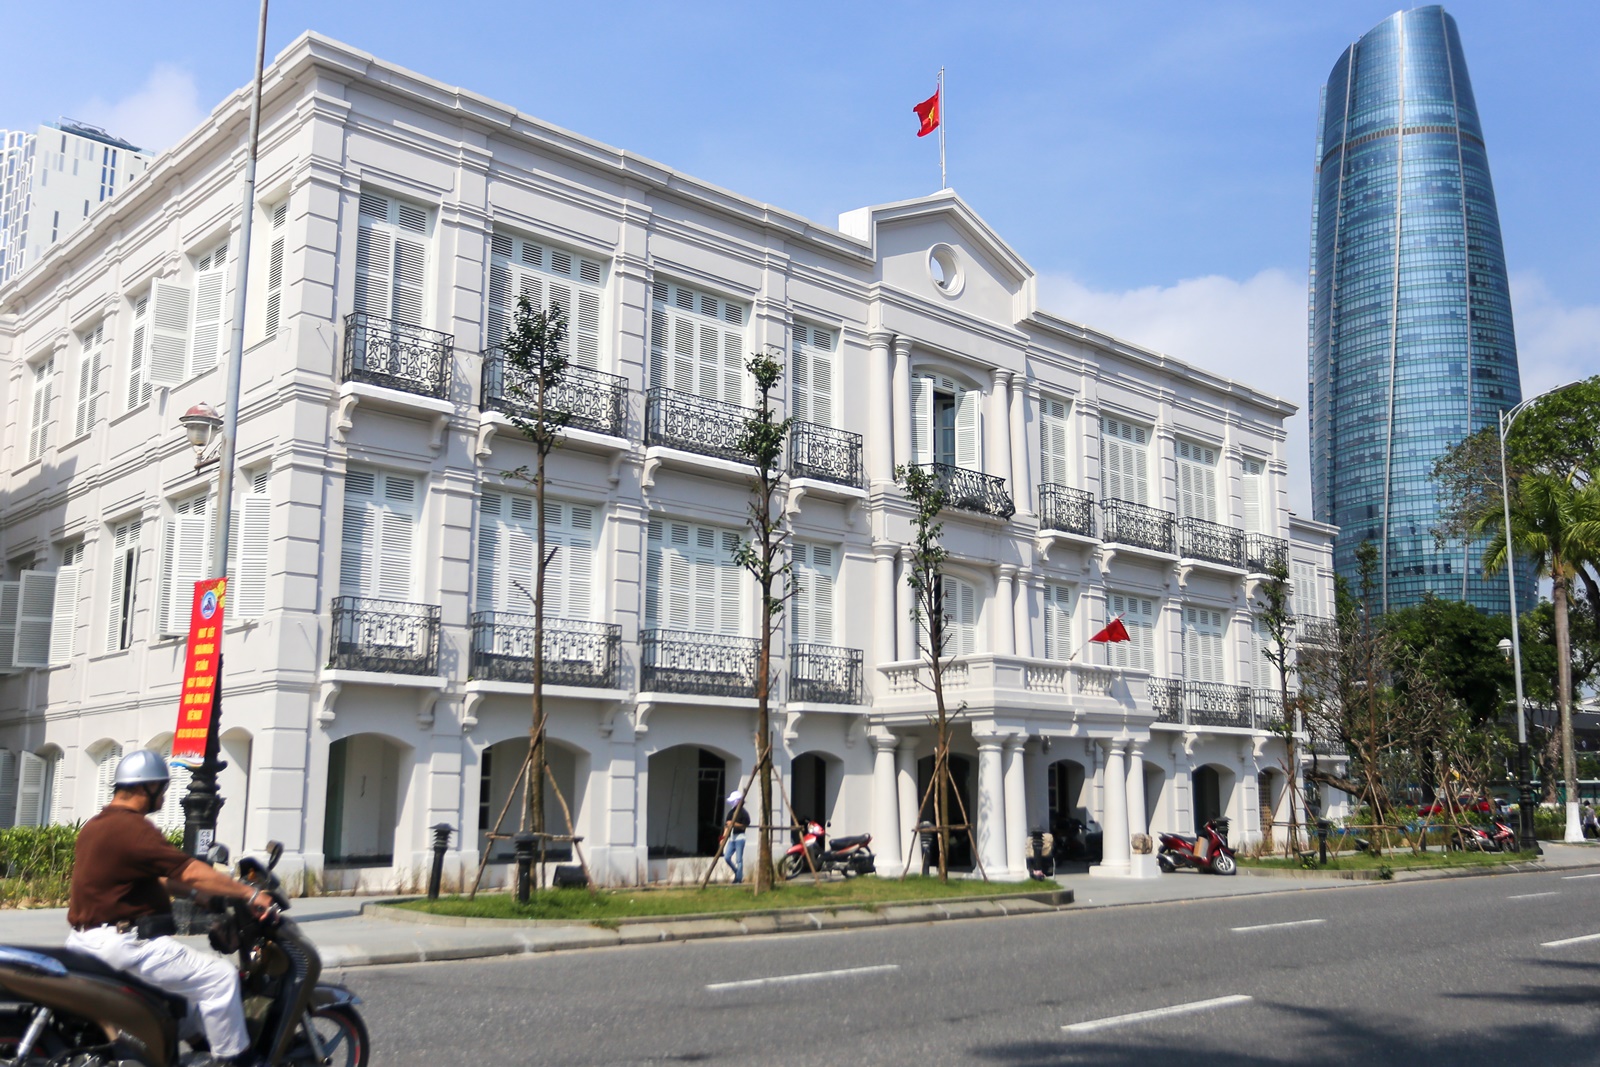 Tòa Đốc lý 120 tuổi ở Đà Nẵng chưa tu bổ xong đã thành điểm check in mới thu hút du khách - Ảnh 2.